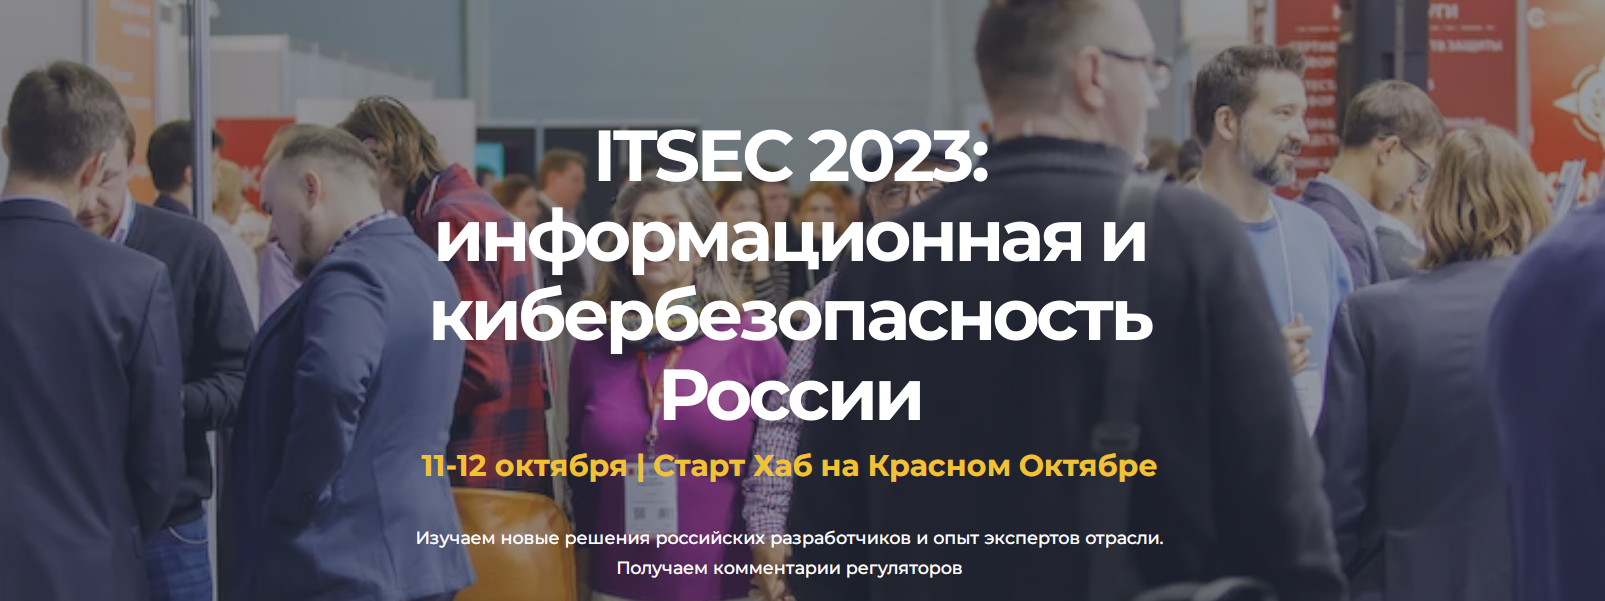 ITSEC 2023